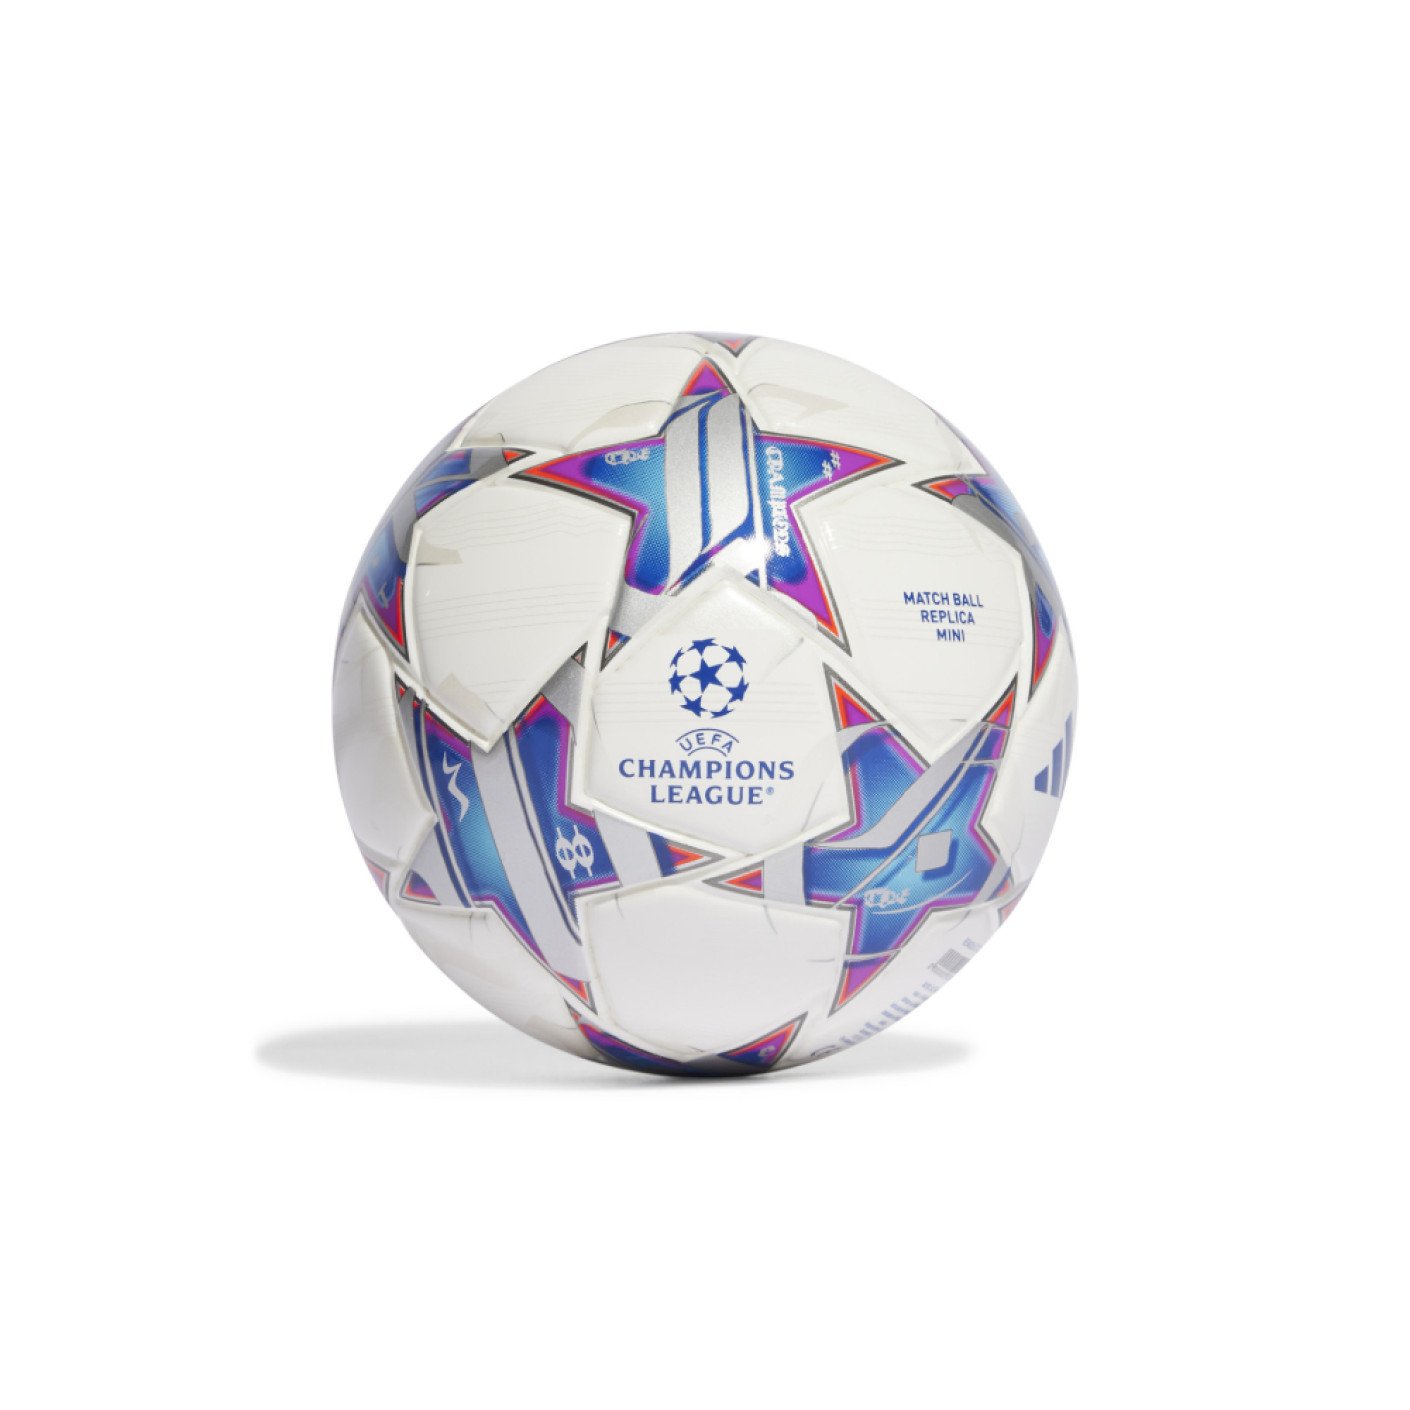 RTBF Sport on X: ⚽️ Voici le nouveau ballon pour l'Euro 2024